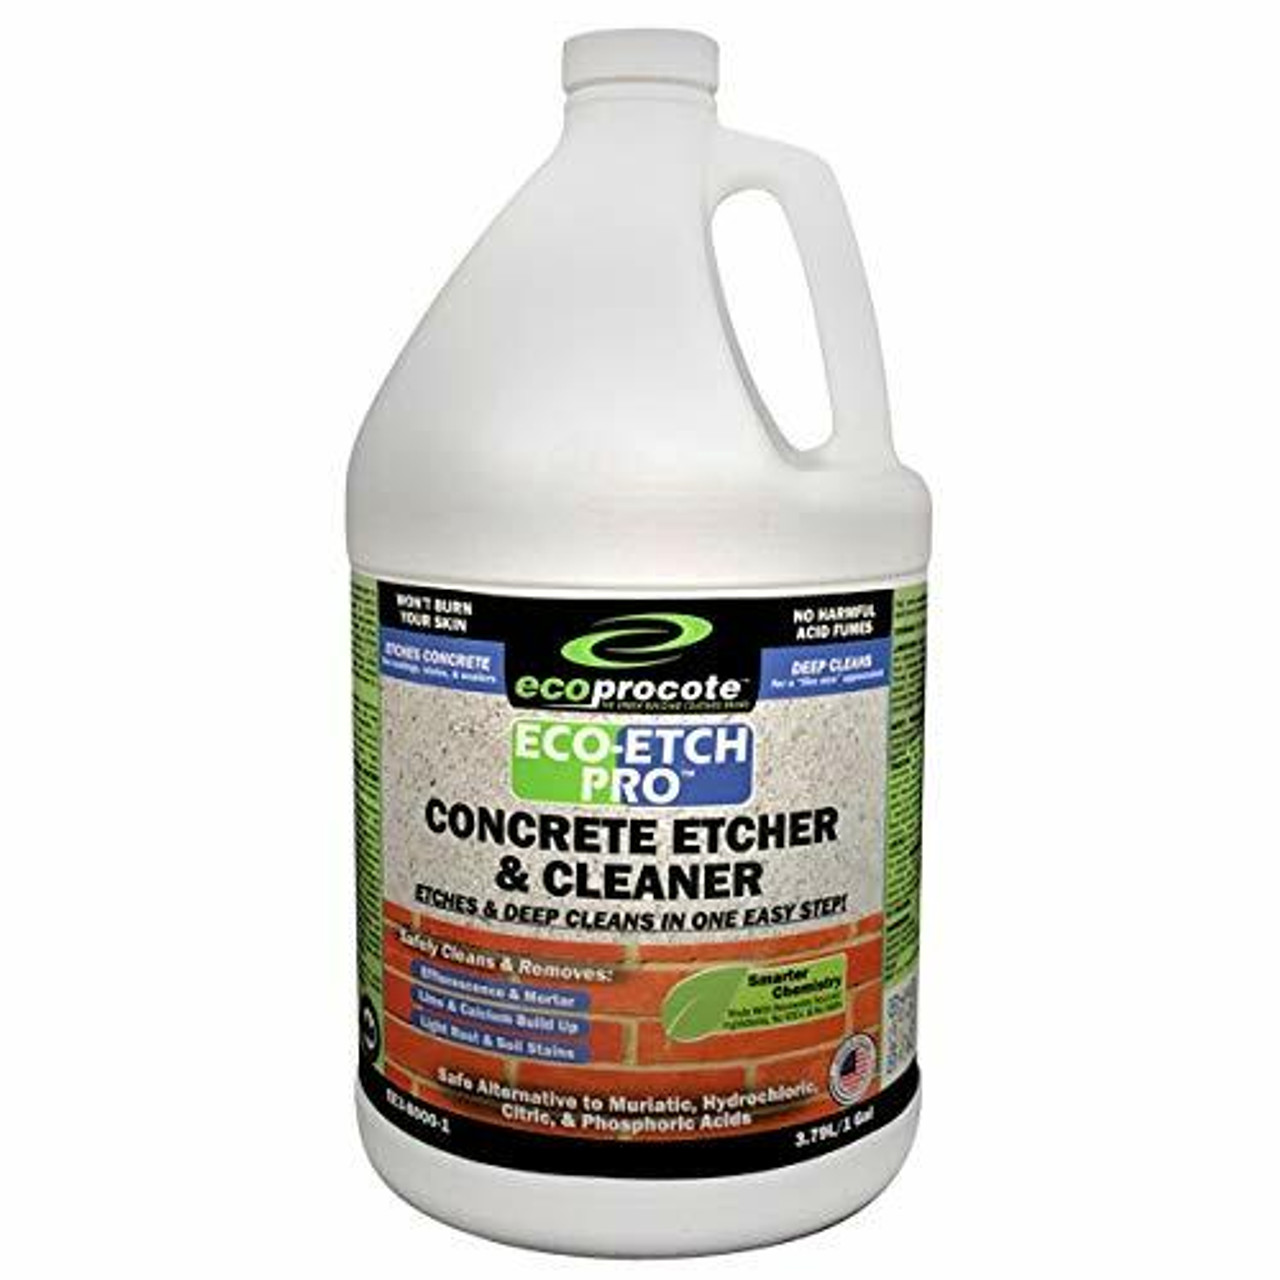 Eco-Etch Pro Concrete Etcher, Concrete Cleaner, Efflorescence